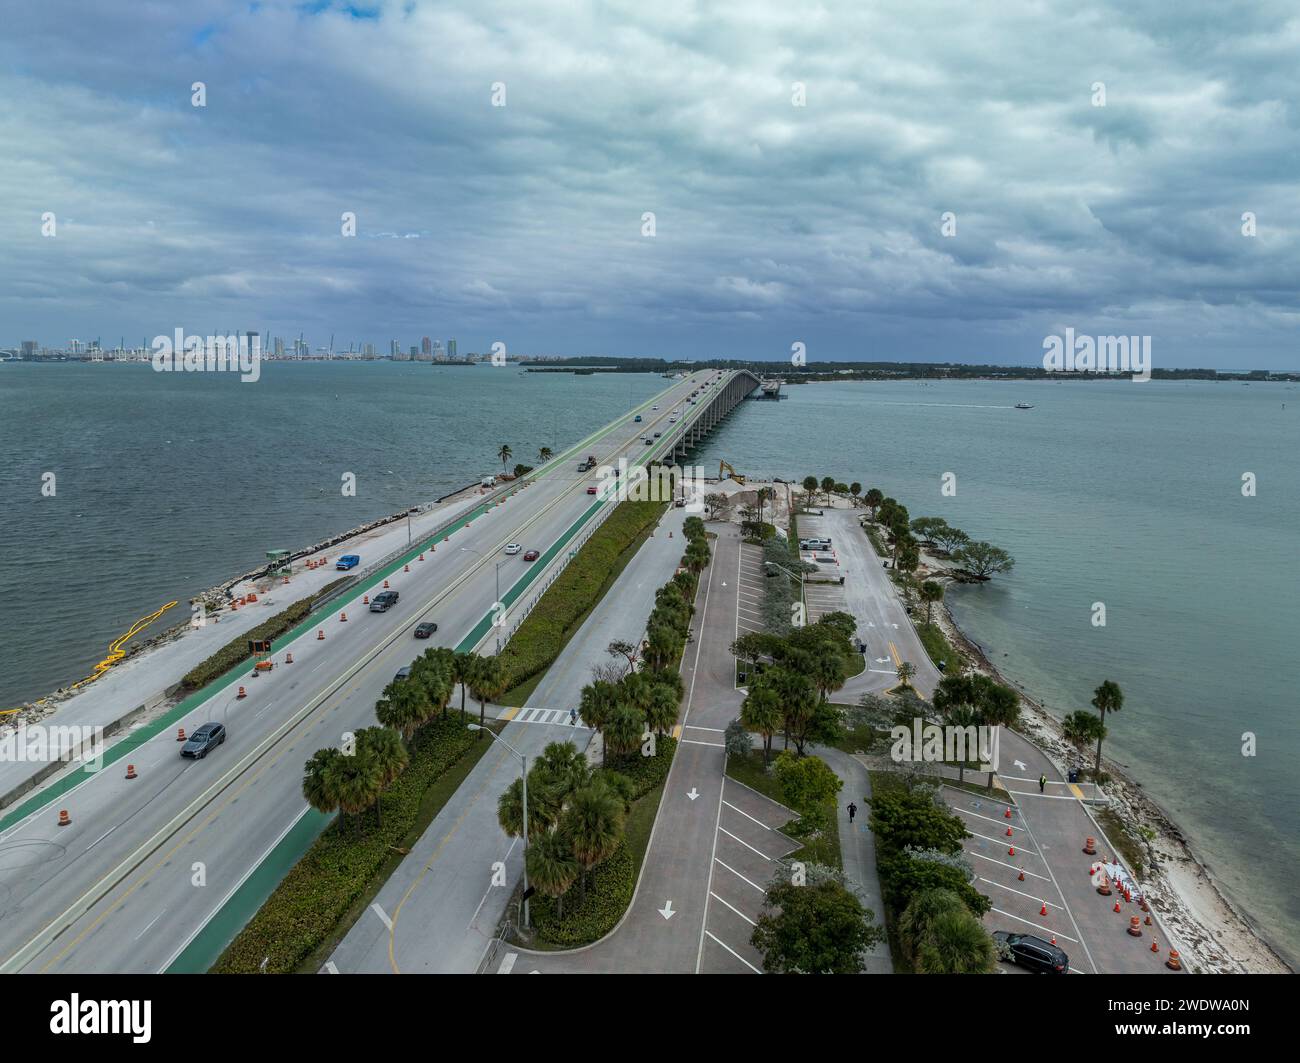 Vue panoramique aérienne du pont william m powell ou de la chaussée Rickenbacker qui relie Miami, Floride aux îles barrières de Virginia Key et K. Banque D'Images